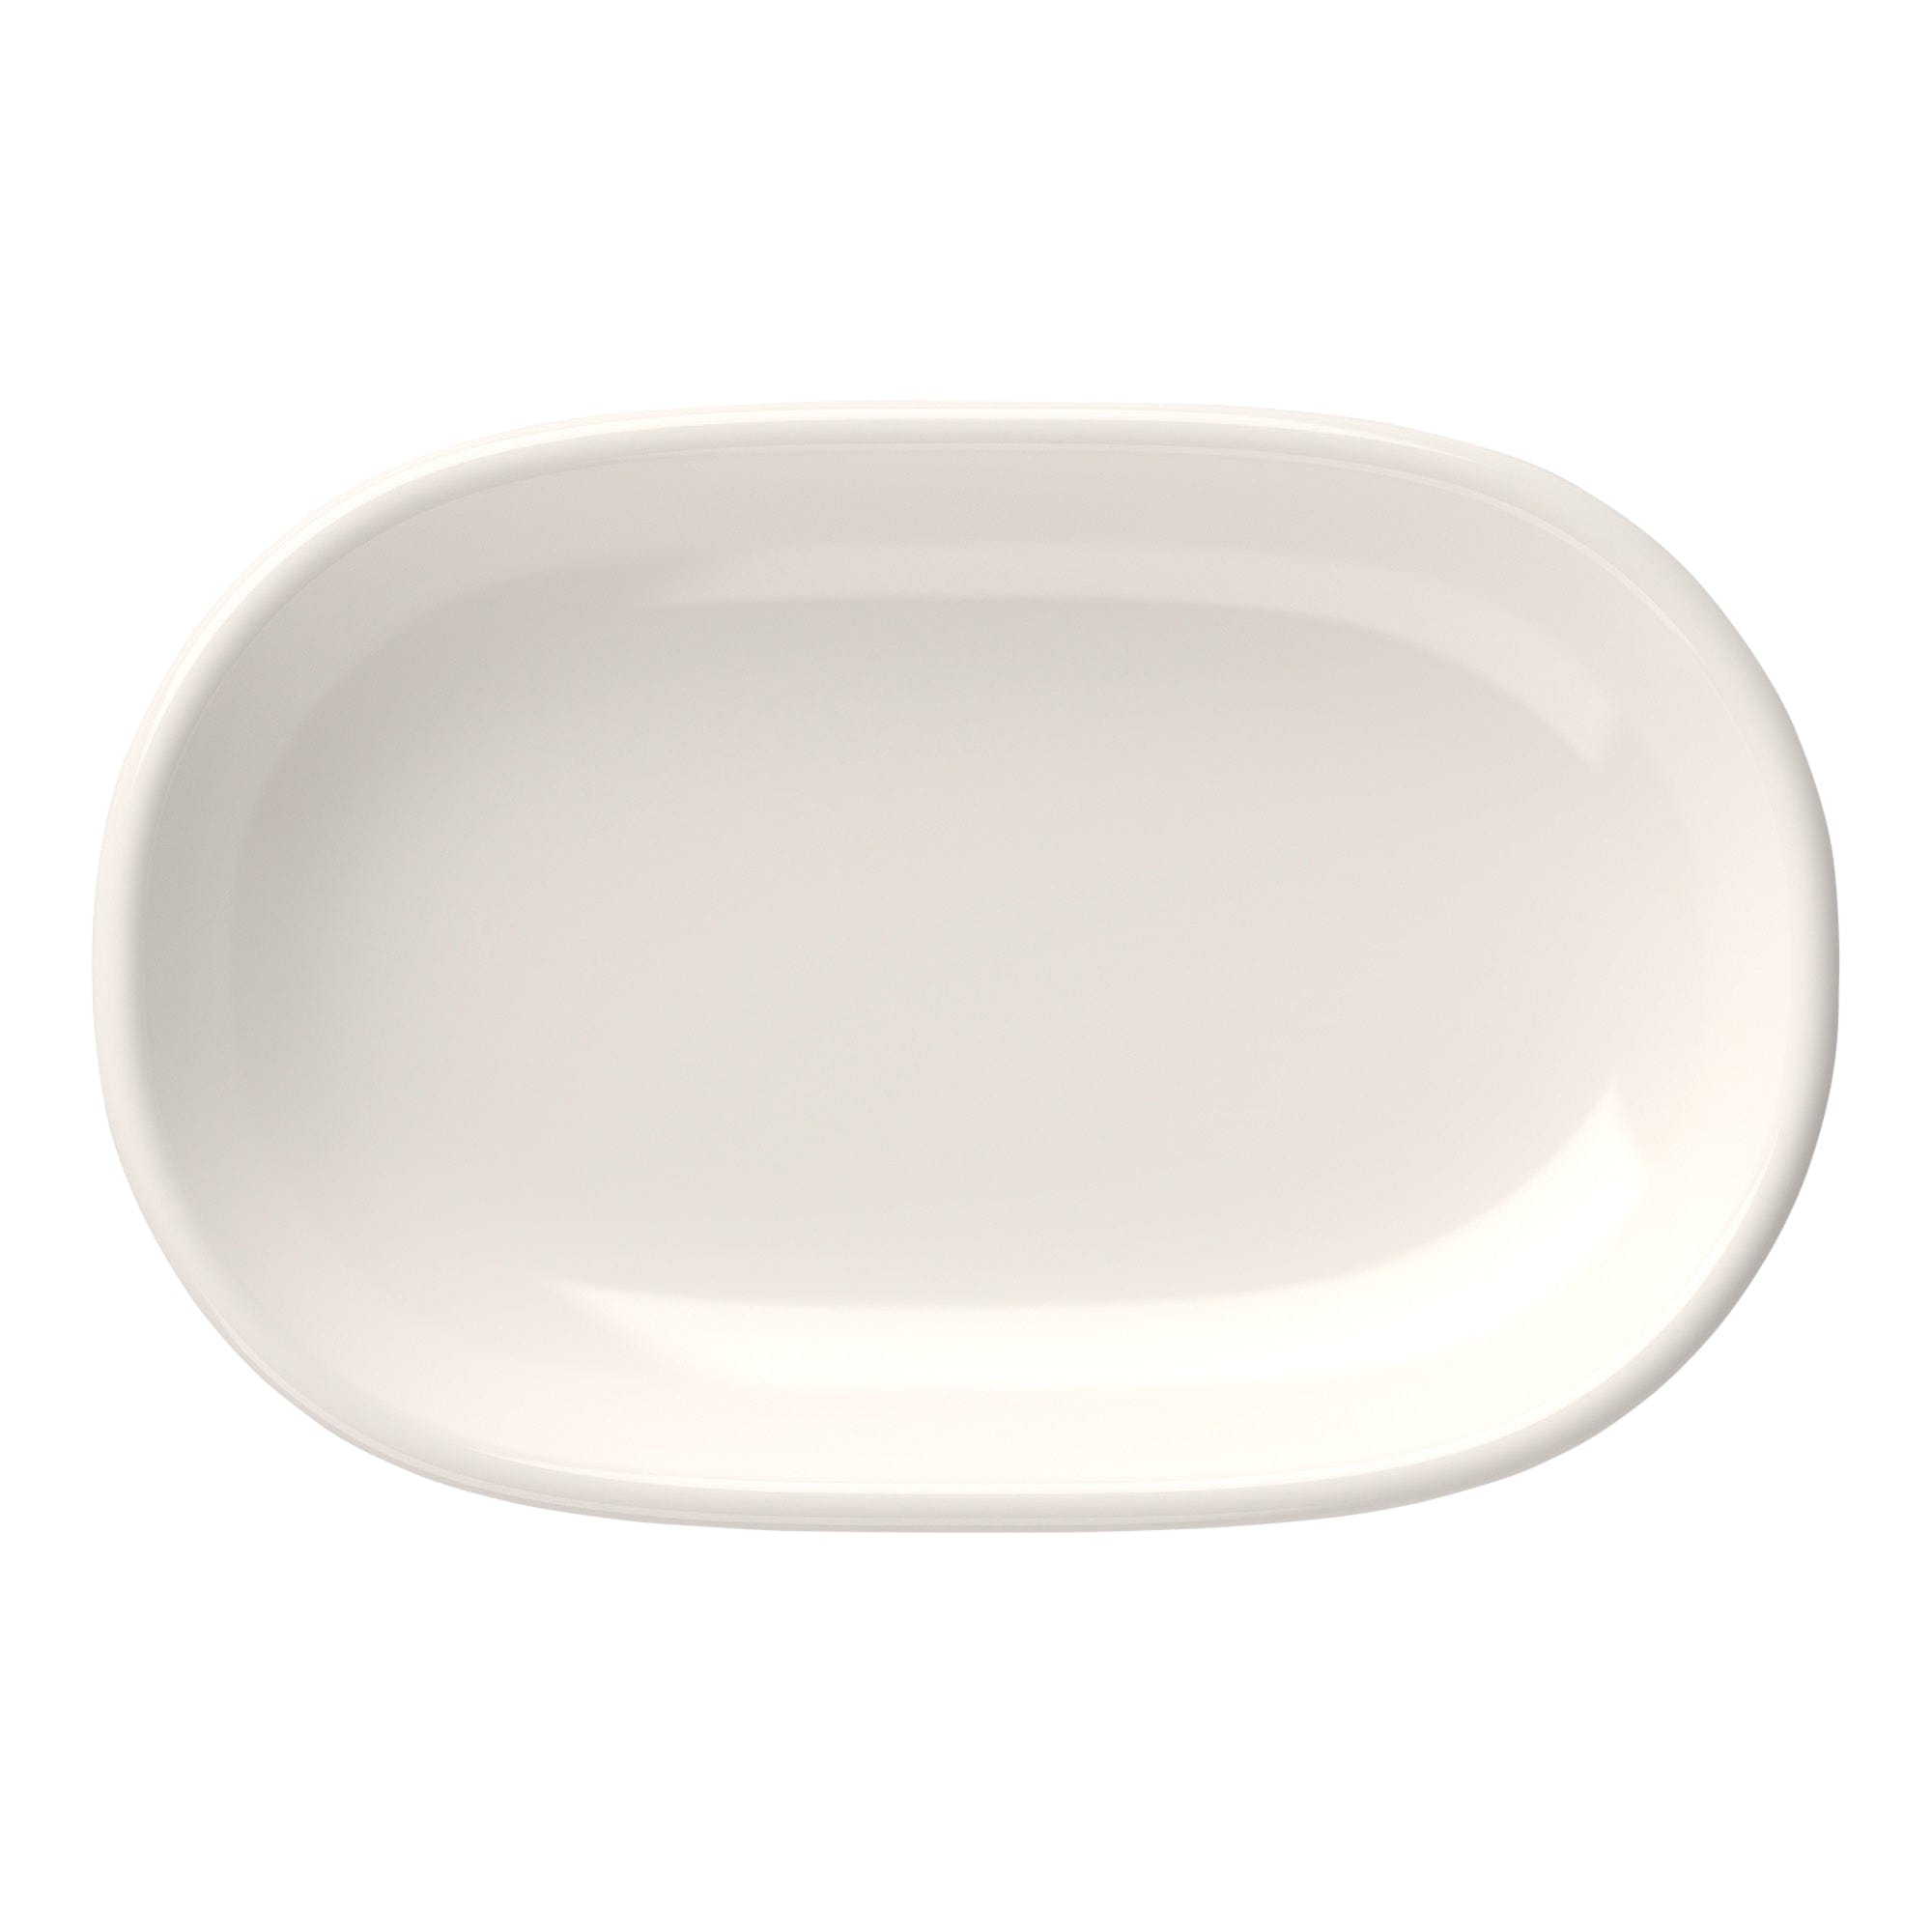 Magnus Porcelain Oval Platter  14.6"x9.7"